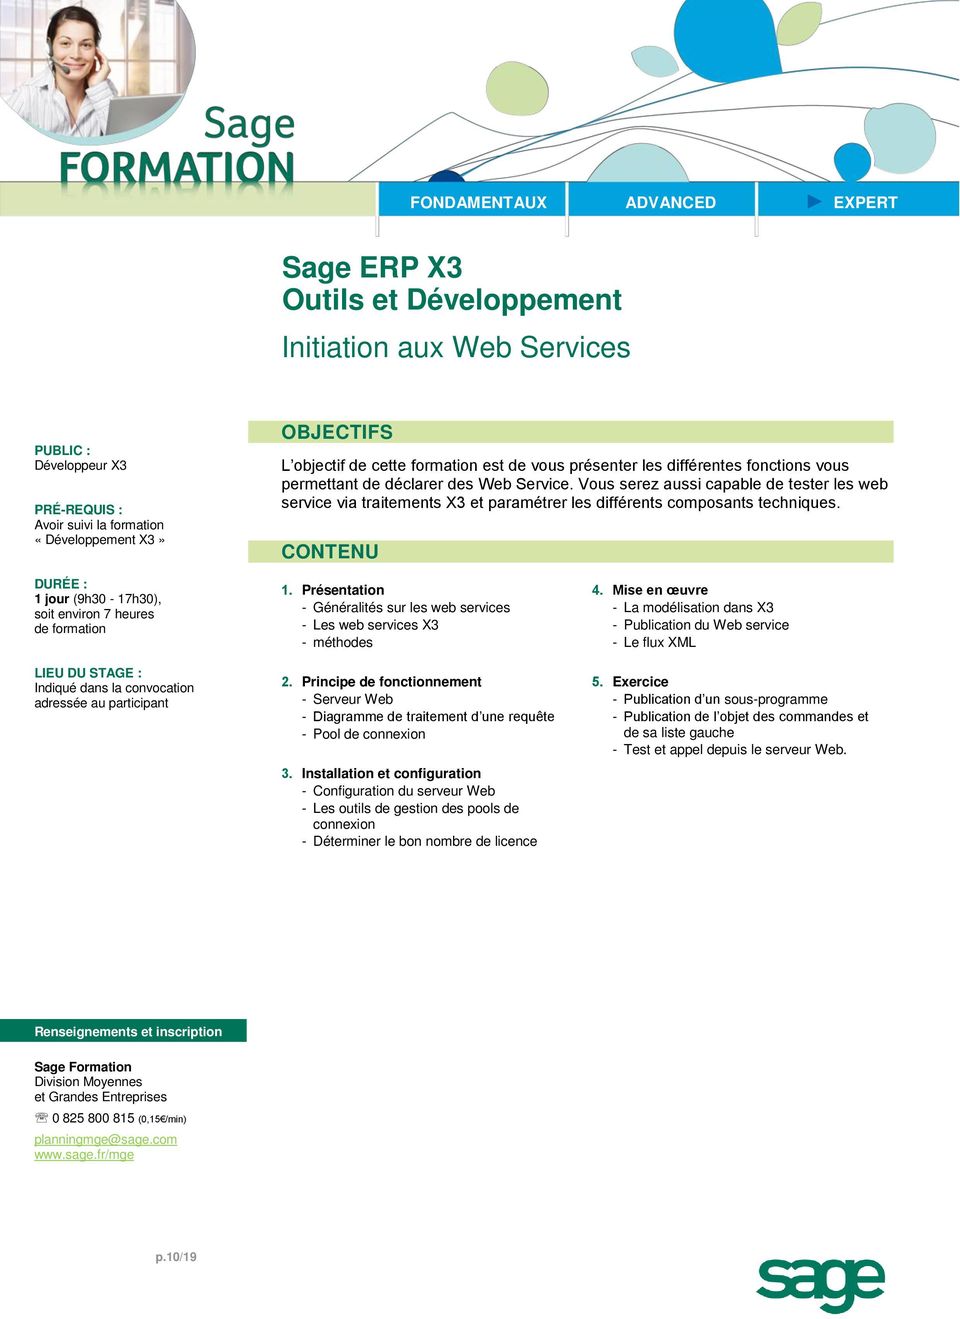 Présentation - Généralités sur les web services - Les web services X3 - méthodes 2. Principe de fonctionnement - Serveur Web - Diagramme de traitement d une requête - Pool de connexion 3.